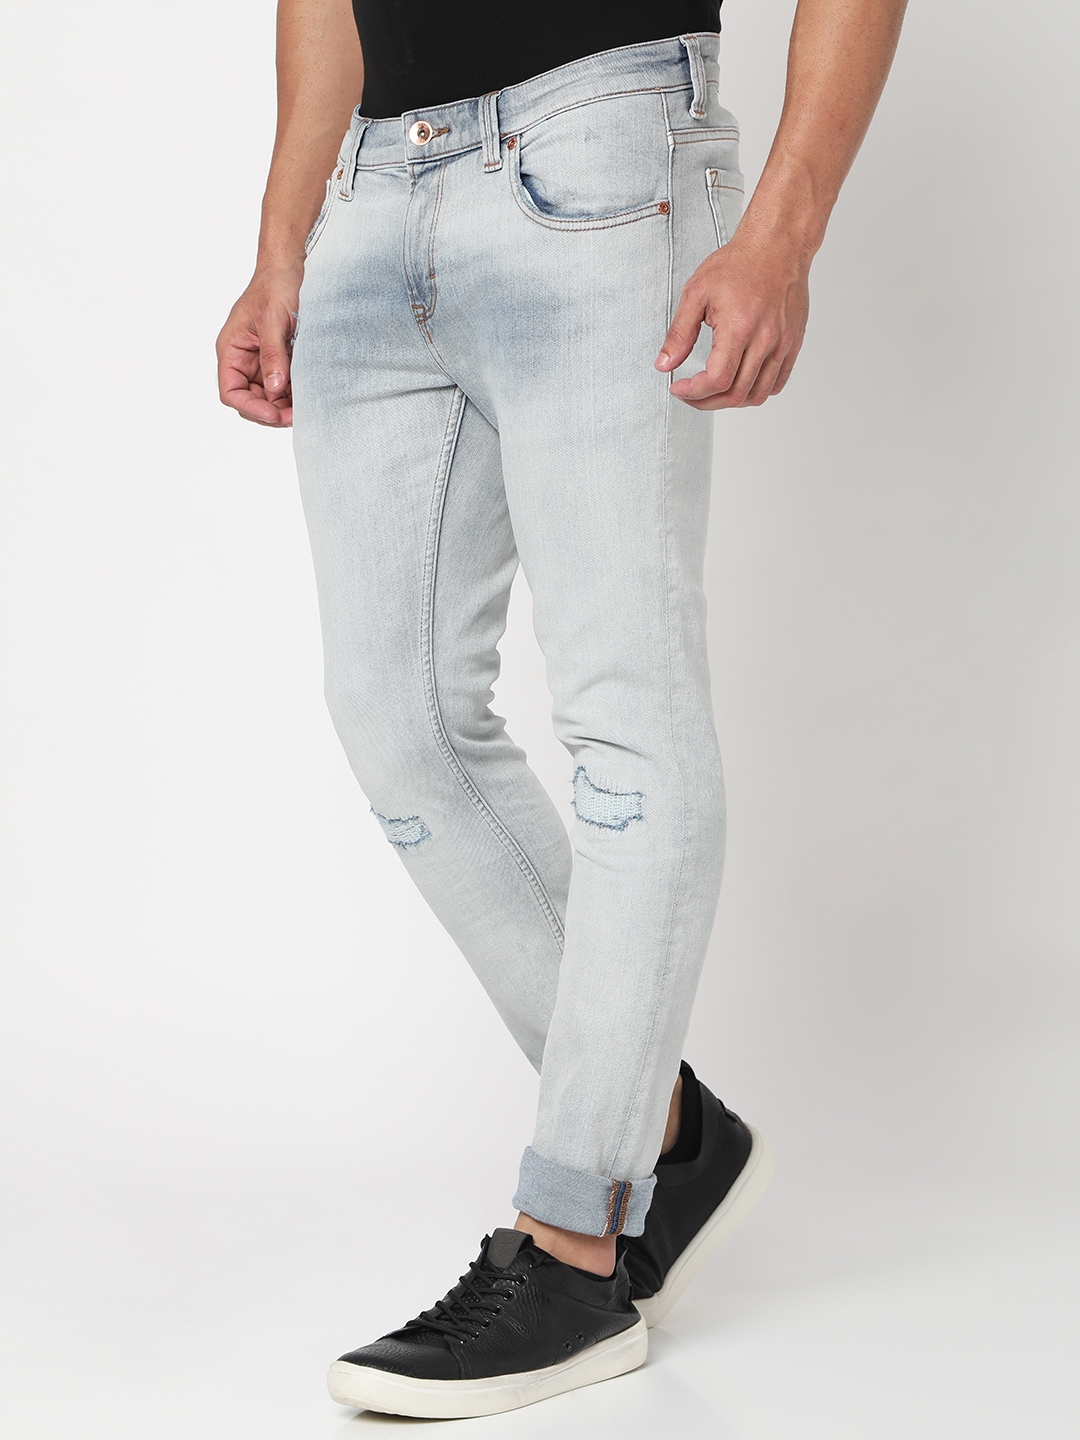 spykar | Men's Blue Cotton Blend Solid Jeans 1